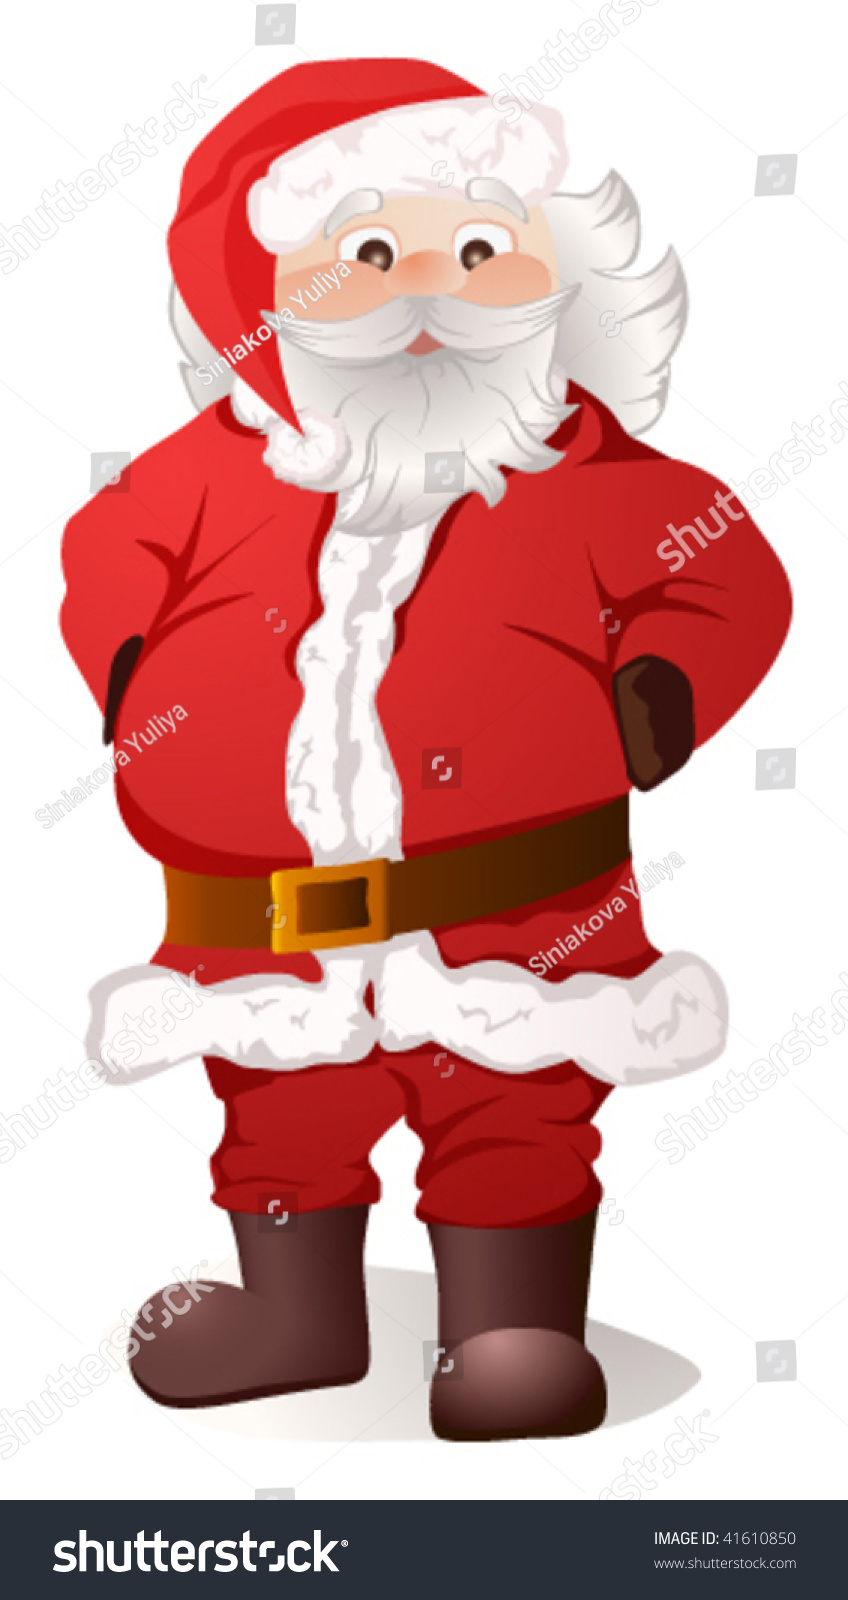 Vector Illustration Of Santa Claus - 41610850 : Shutterstock